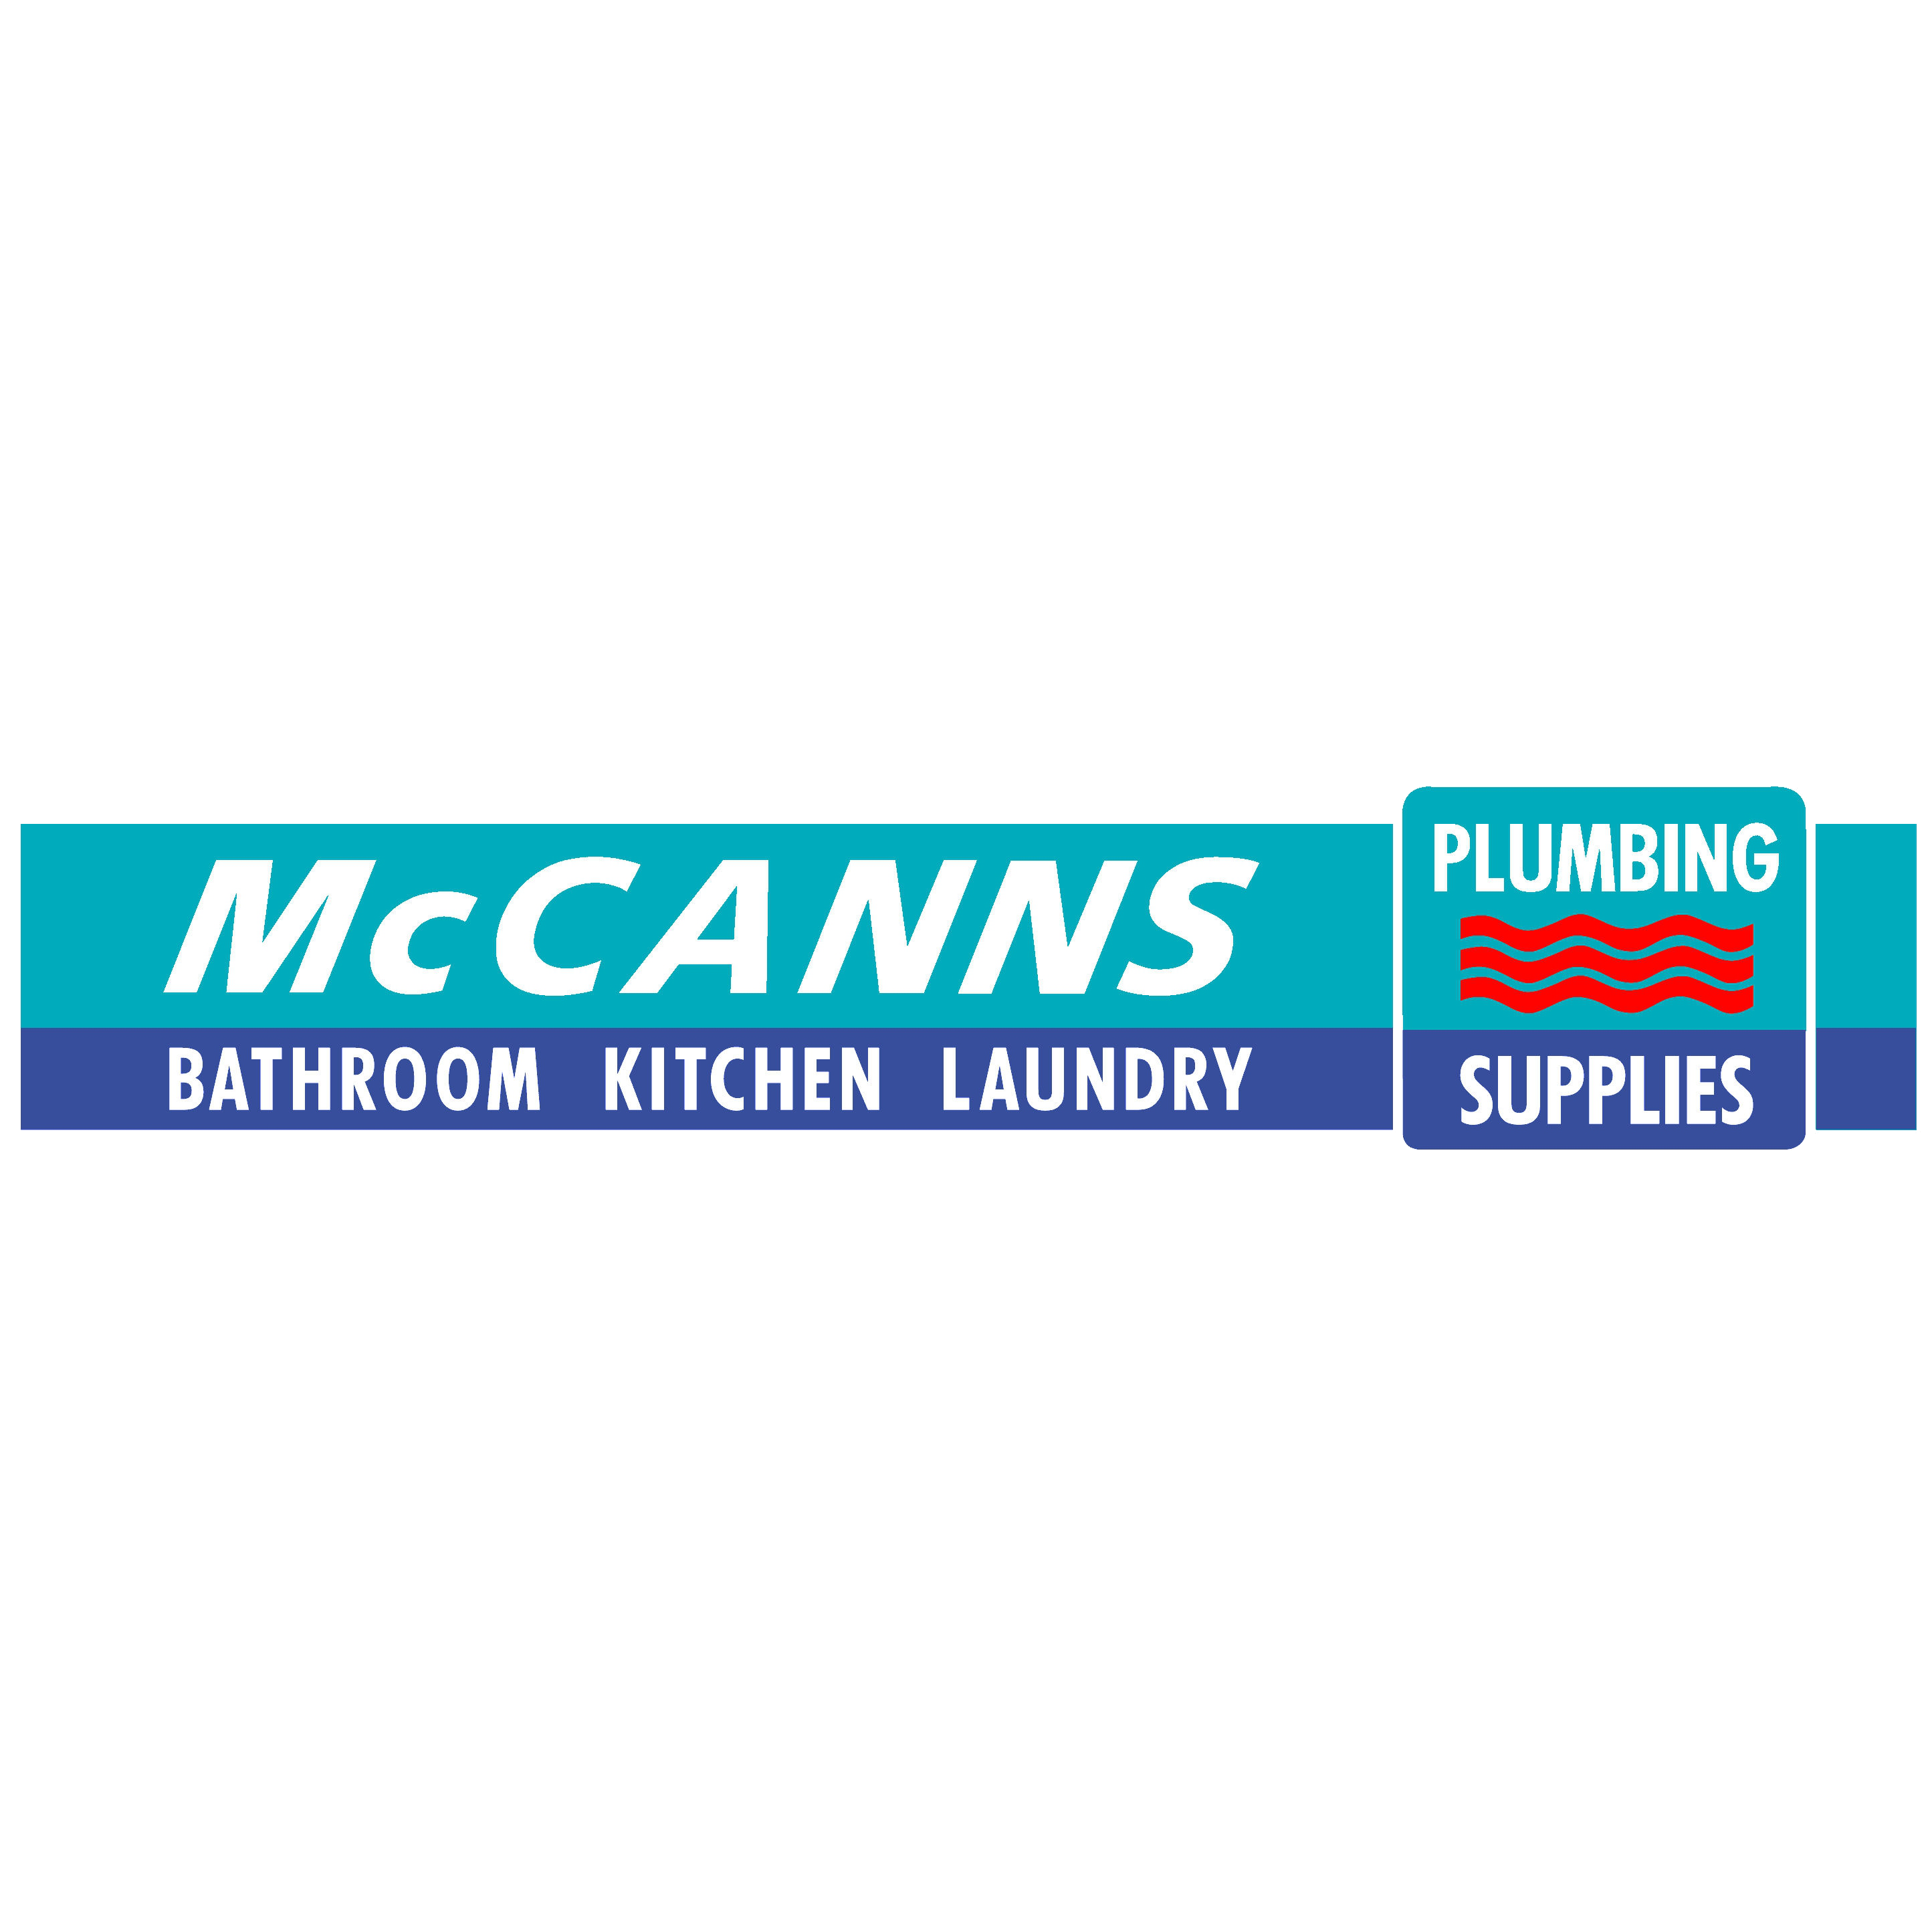 McCann's Plumbing Supplies and Sheetmetal Logo